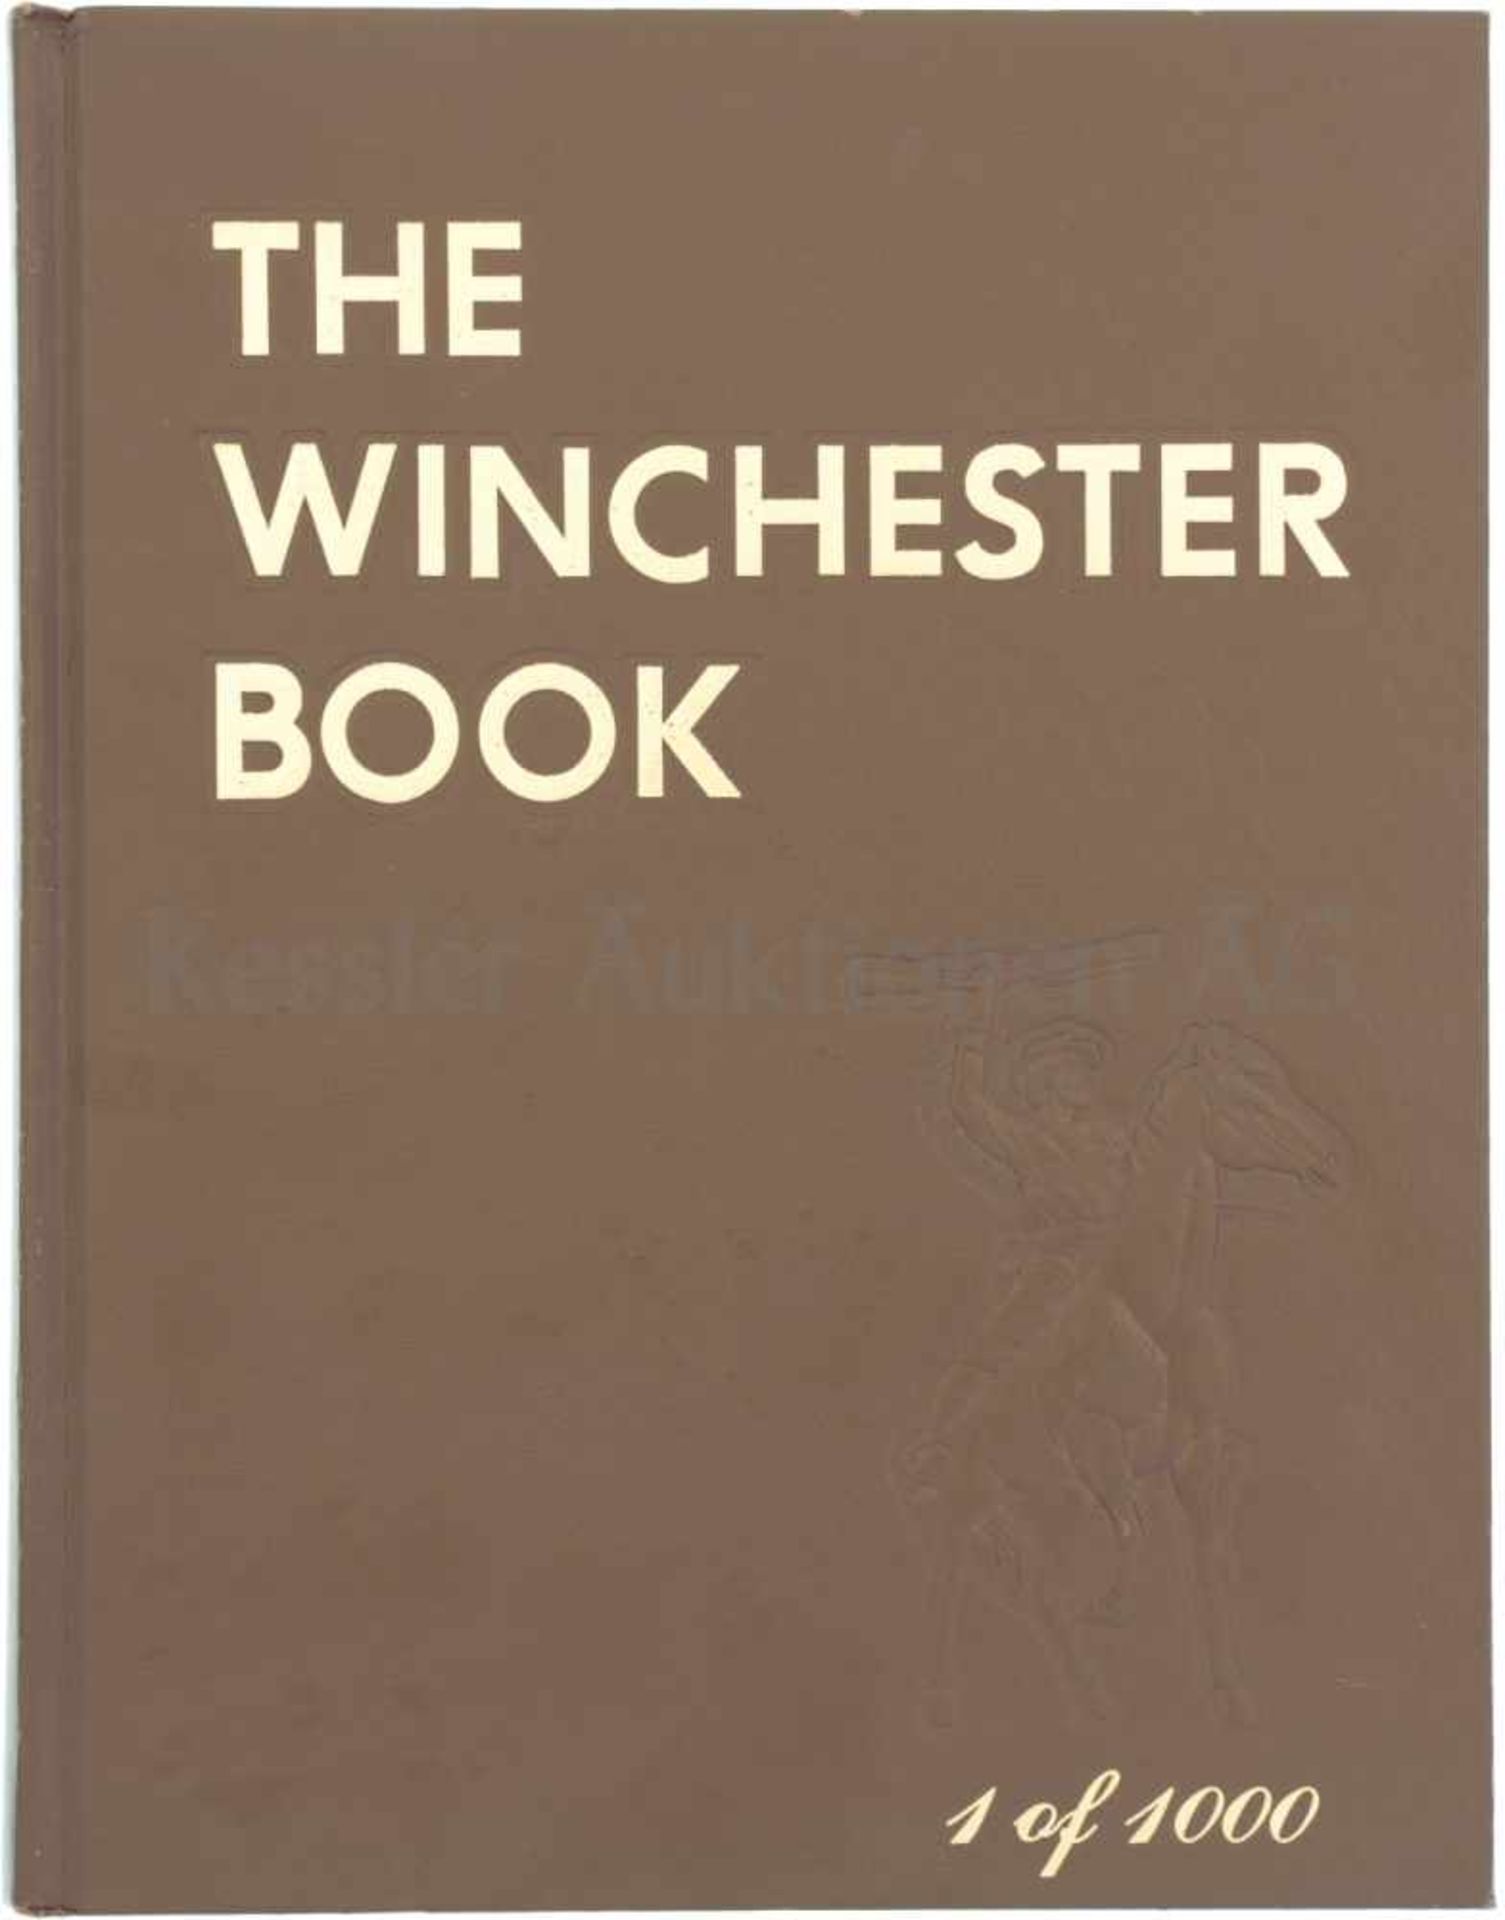 The Winchester Book, 1 of 1000 by George Madis. Auf 654 Seiten werden sämtliche Winchester Modelle